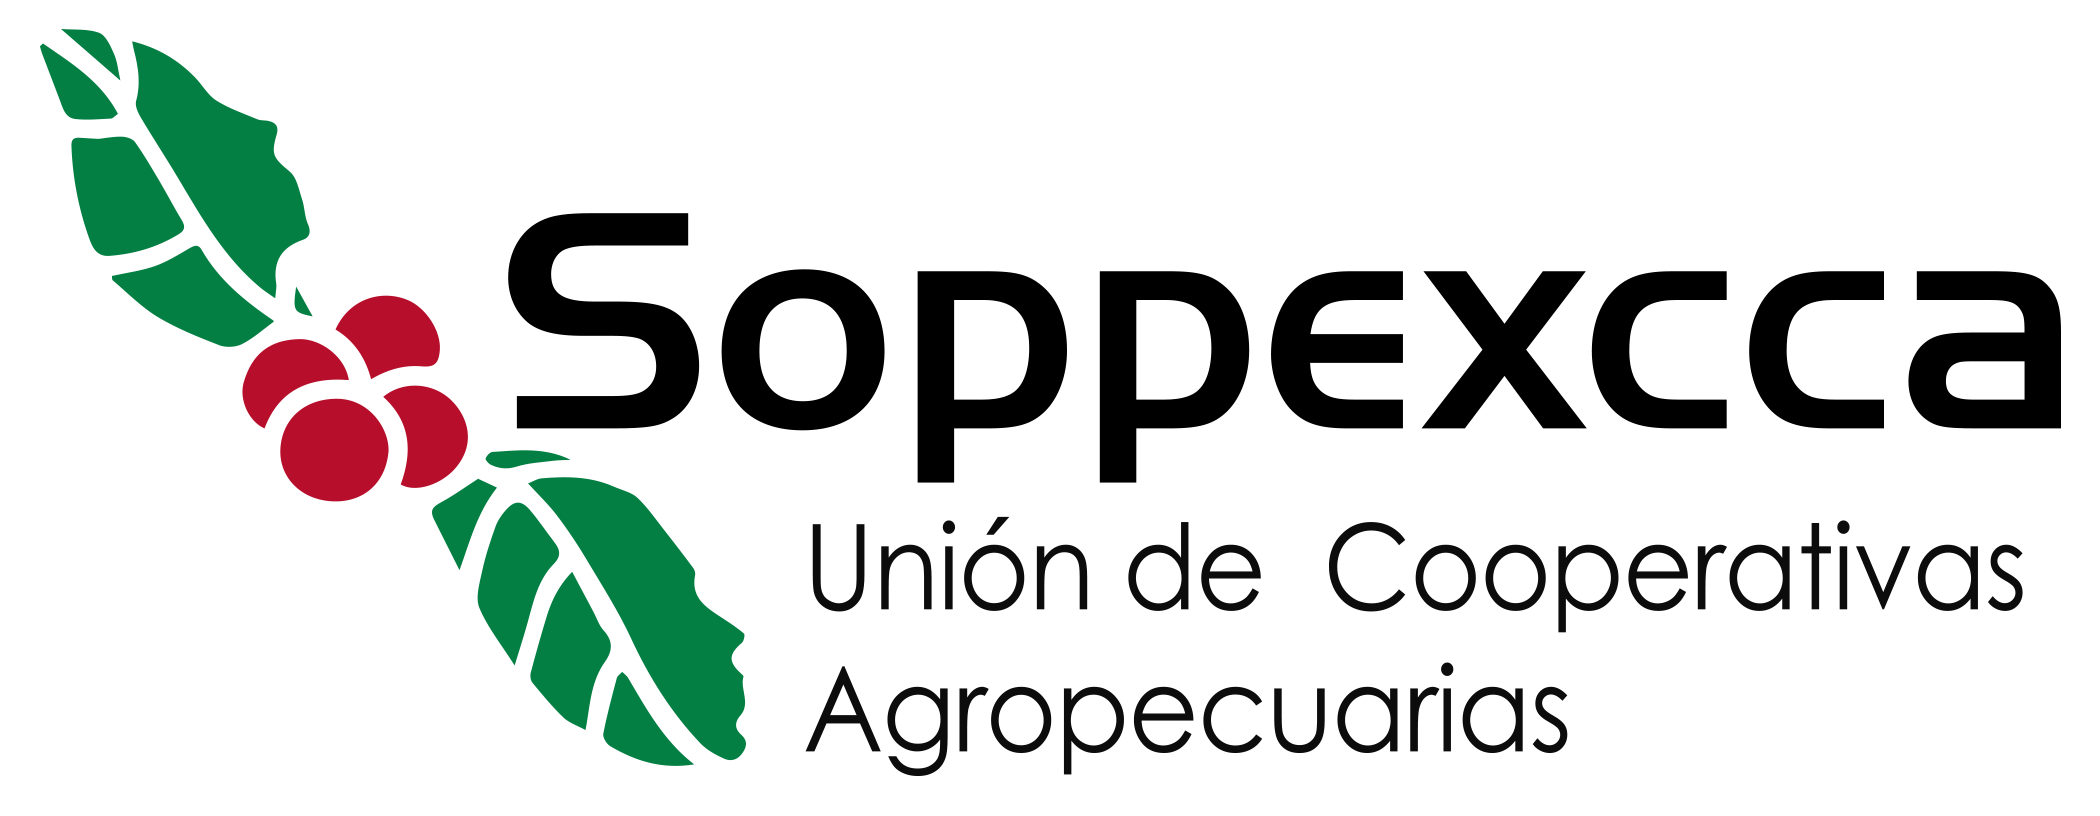 Unión de Cooperativas Agropecuarias – UCA SOPPEXCCA